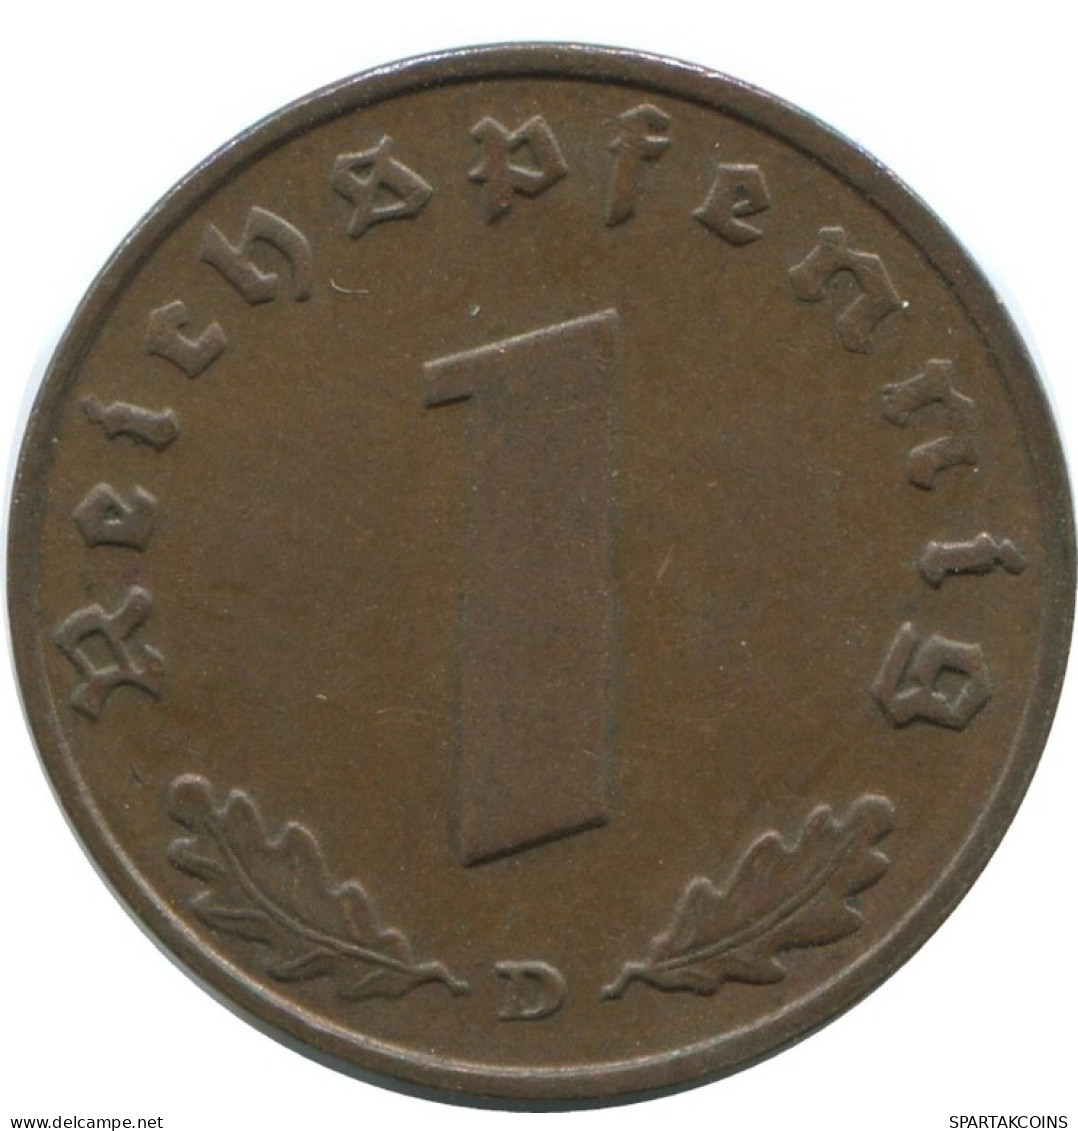 1 REICHSPFENNIG 1938 D ALEMANIA Moneda GERMANY #AD906.9.E.A - 1 Reichspfennig